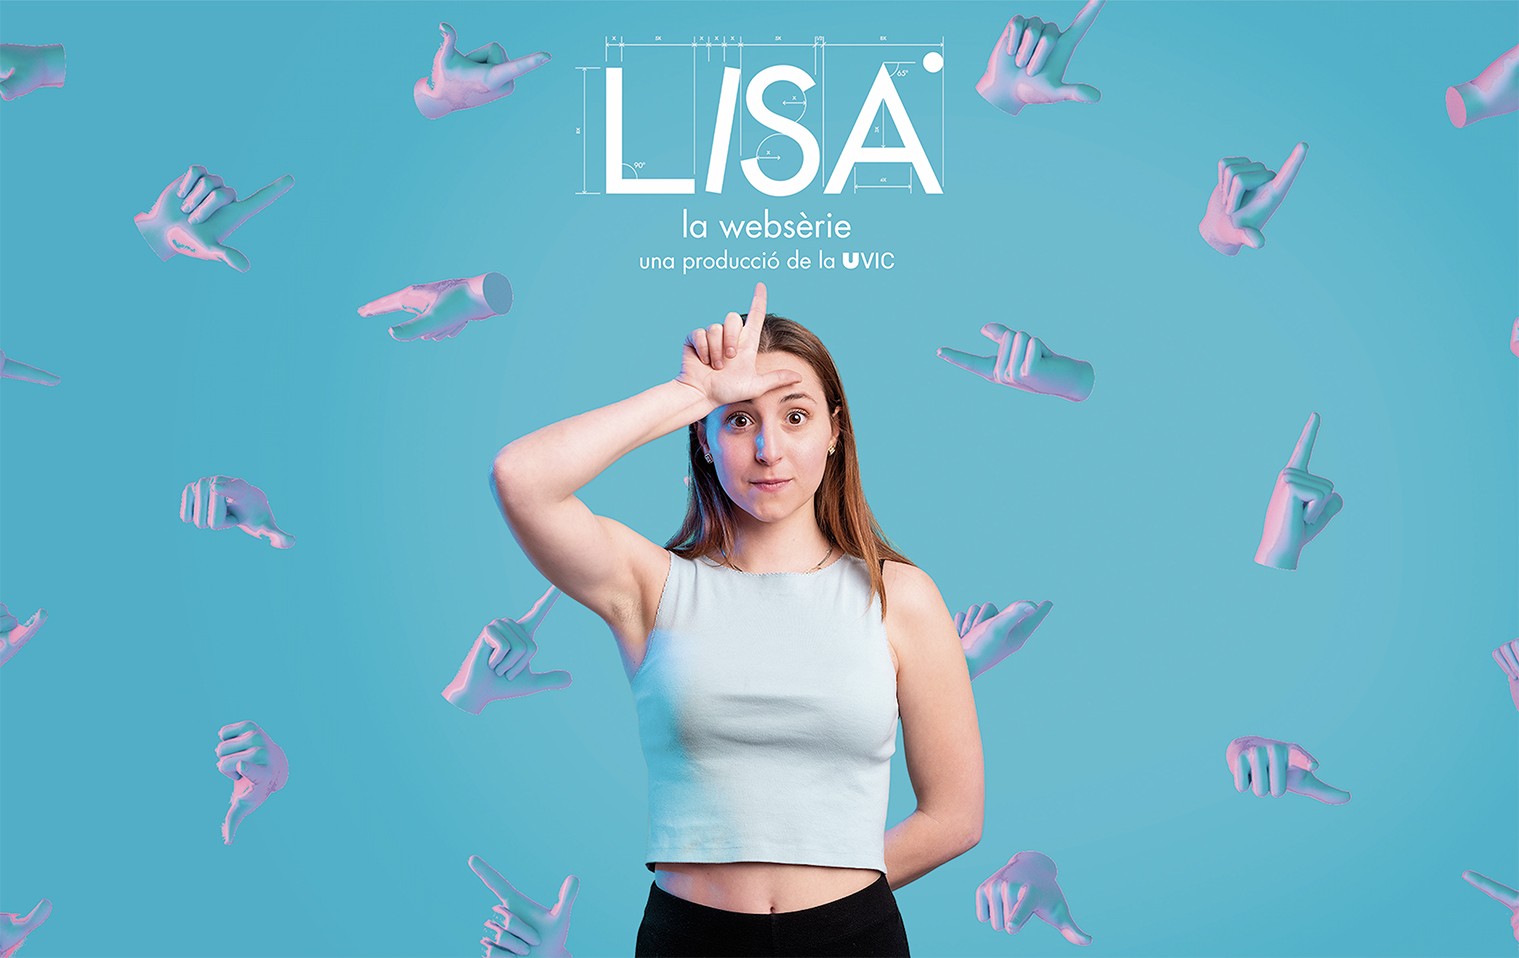 'LISA', una websèrie de la UVic produïda per Abacus